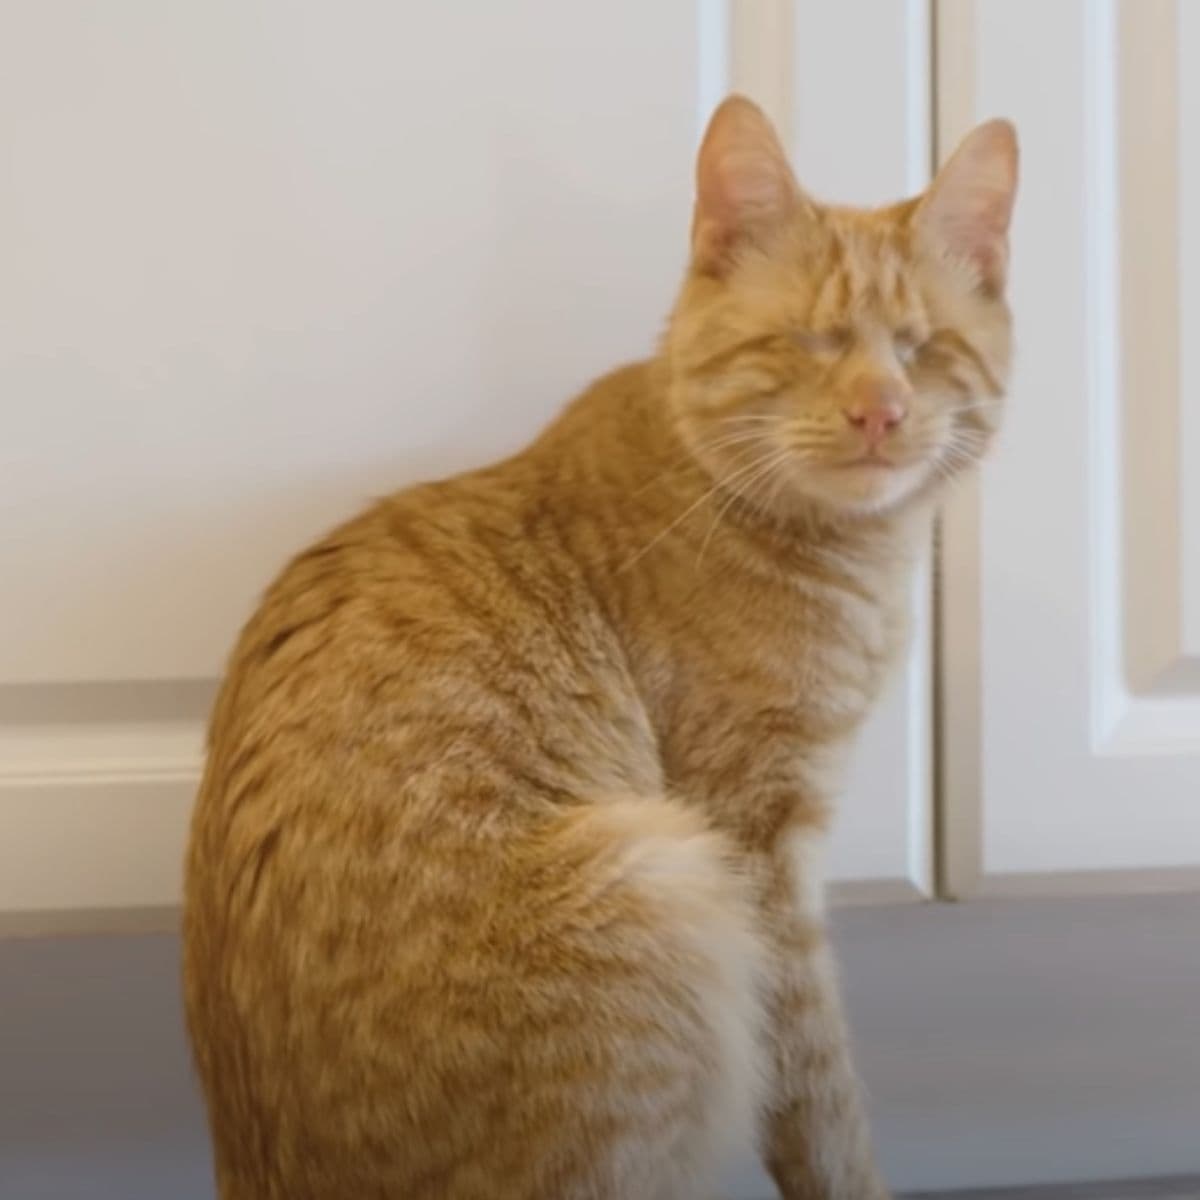 blind ginger cat